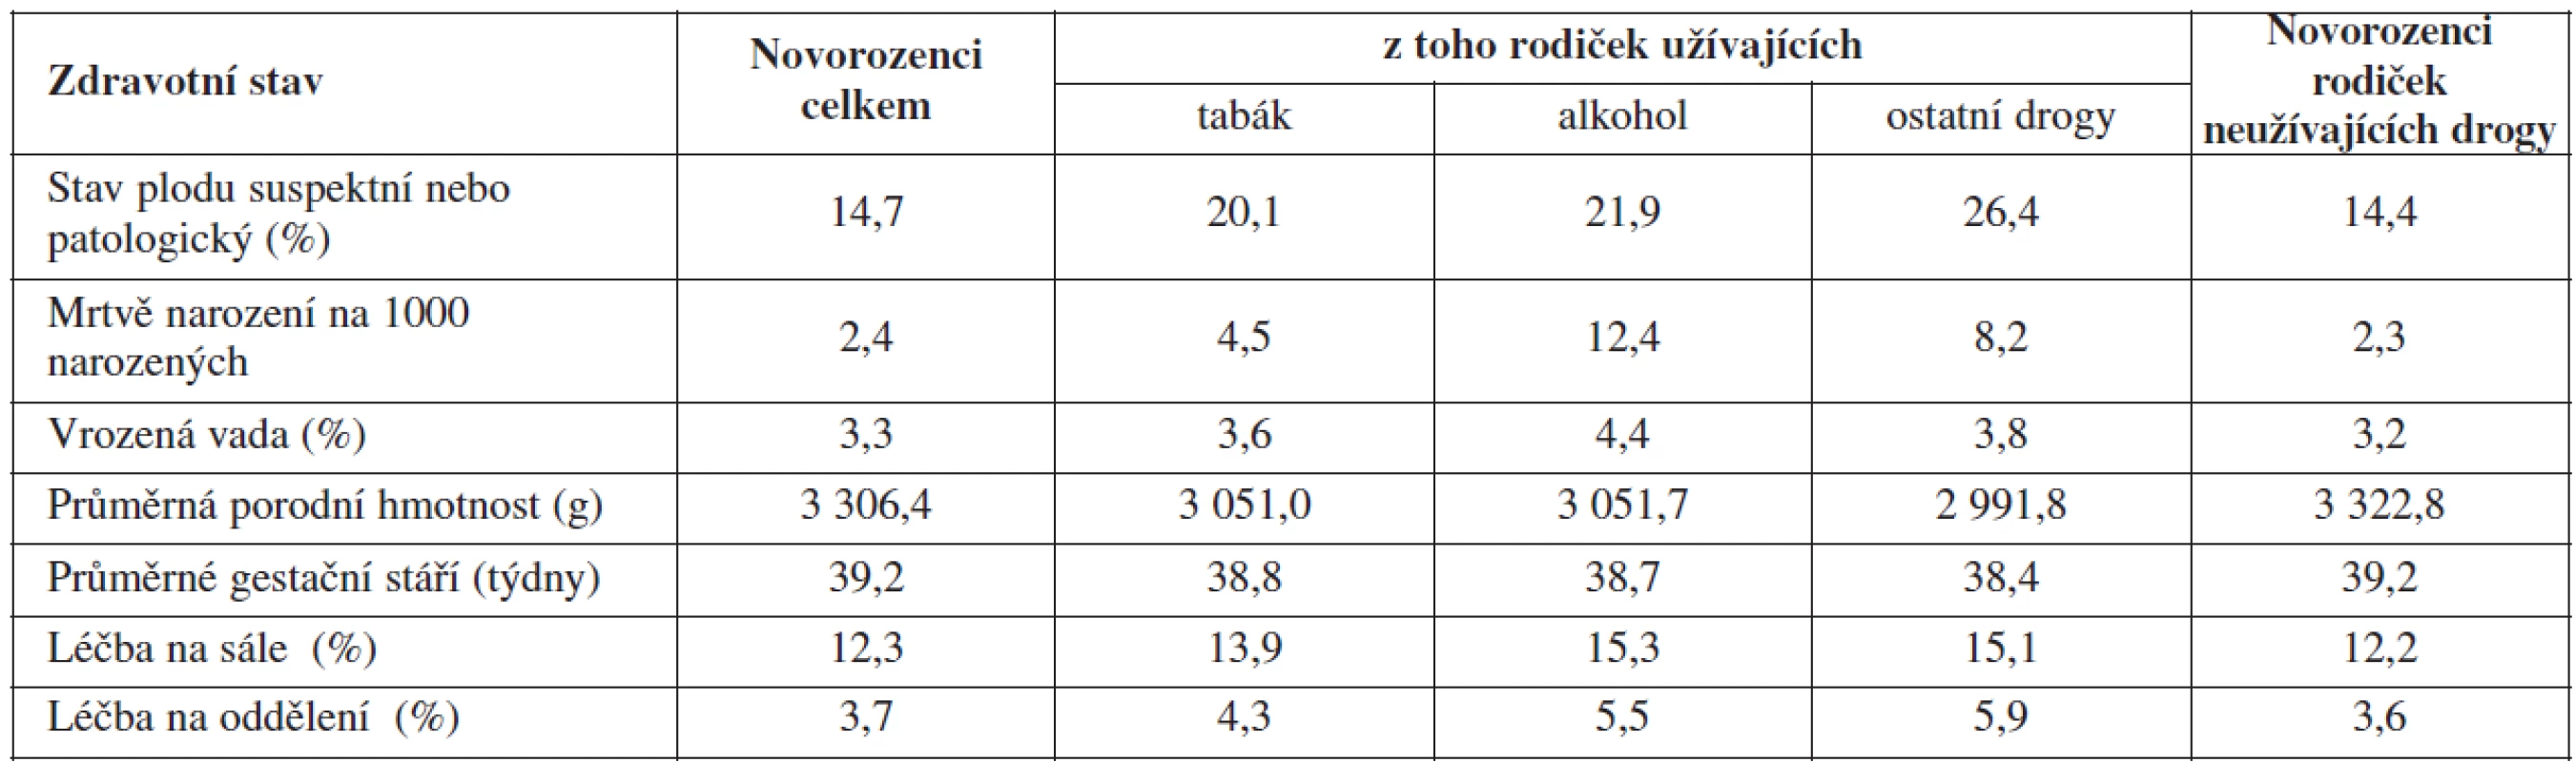 Charakteristiky zdravotního stavu u celkového počtu novorozenců a u novorozenců rodiček užívajících návykové látky v letech 2000–2009